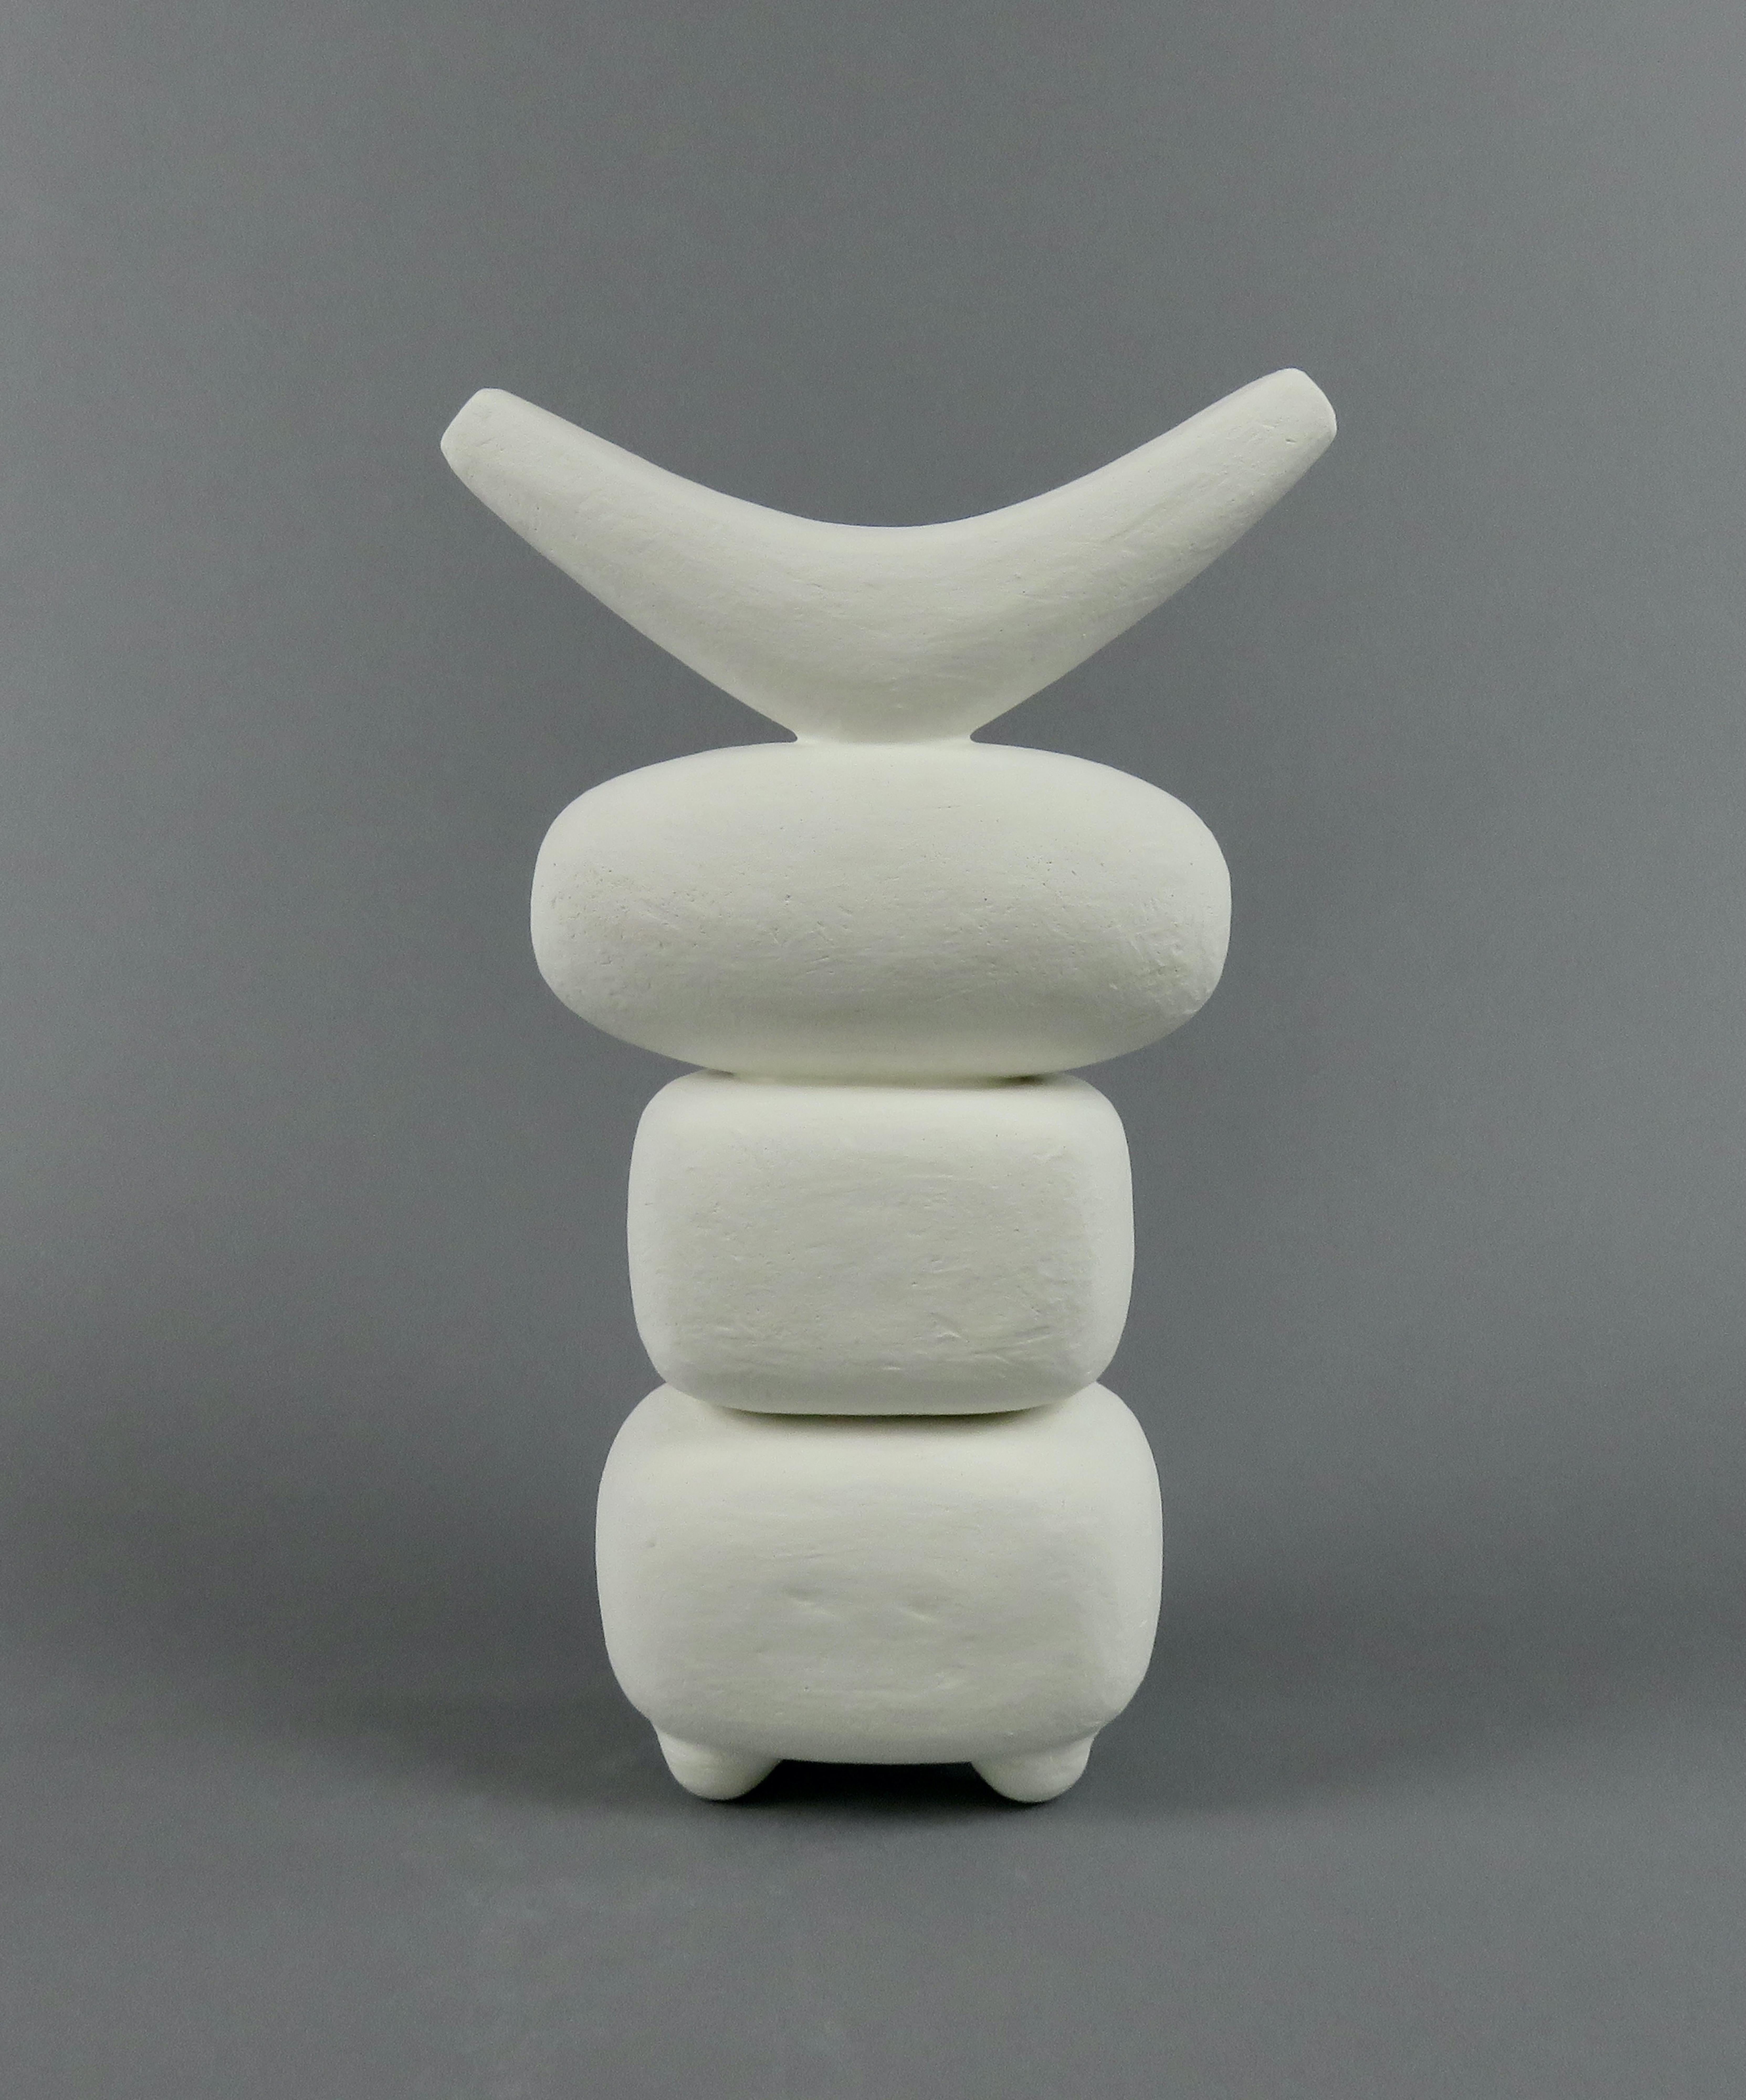 Ein hohes, handgefertigtes Modernes TOTEM aus Keramik, geschaffen von der Künstlerin Helena Starcevic, das Teil einer fortlaufenden Studie über die totemistische Form ist. Hier sind es 4 einzelne Teile, die von Hand geformt und mit 4 kleinen Füßen